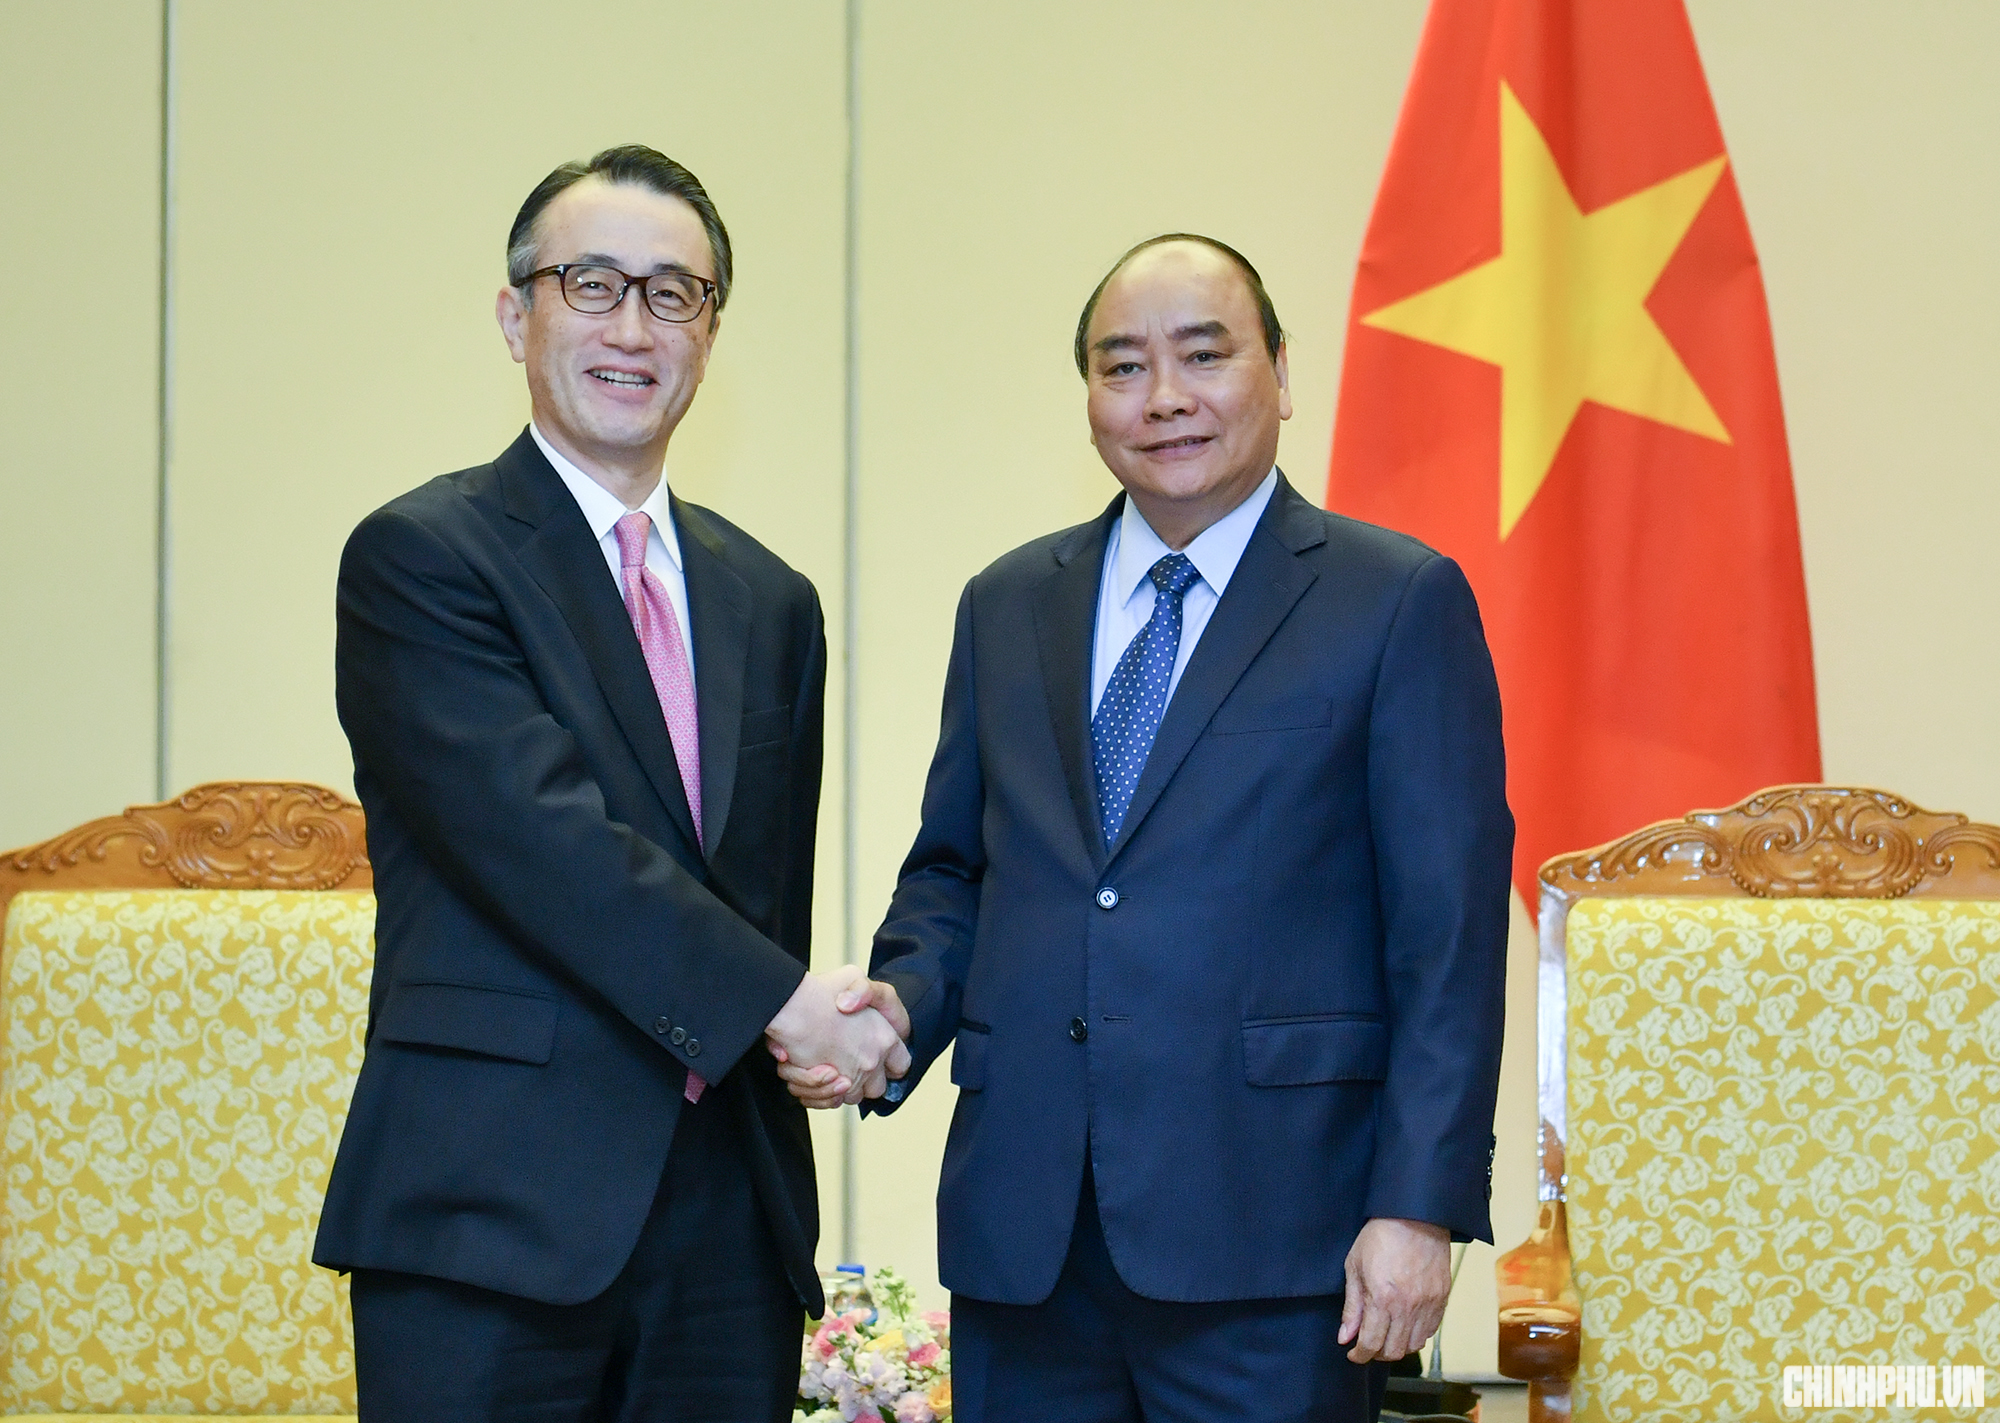  Thủ tướng mong muốn các doanh nghiệp Nhật Bản đầu tư mạnh hơn nữa vào Việt Nam